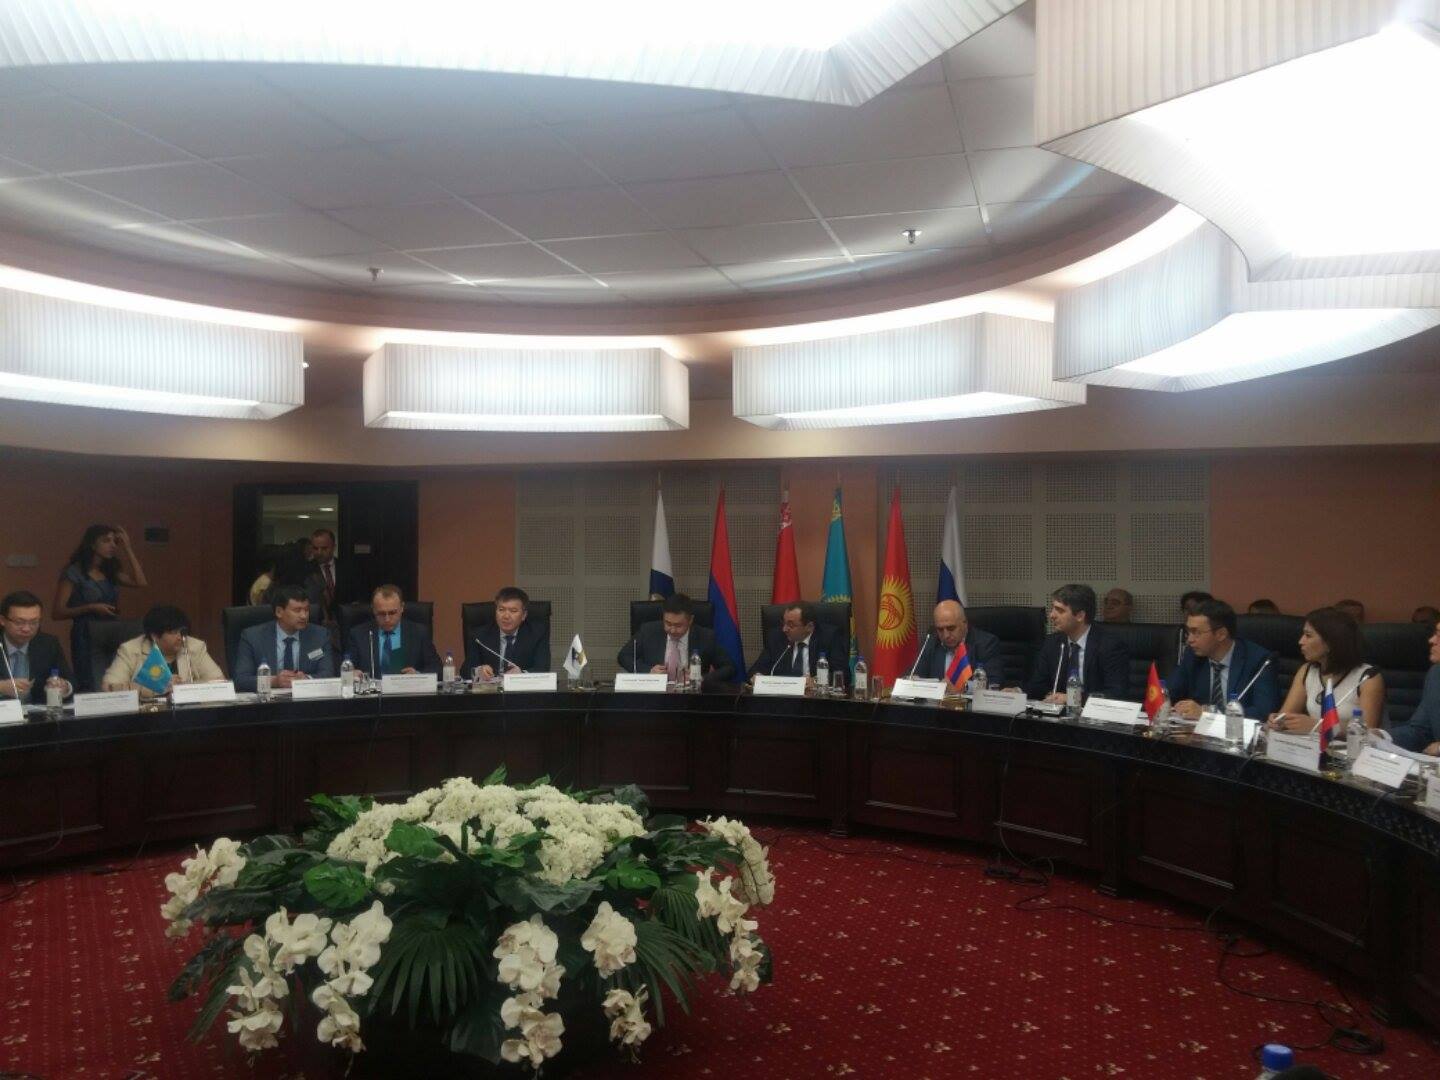 Налоговое регулирование стран ЕАЭС на повестке девятого заседания Консультативного комитета по вопросам предпринимательства Евразийской экономической комиссии (ЕЭК) в Ереване